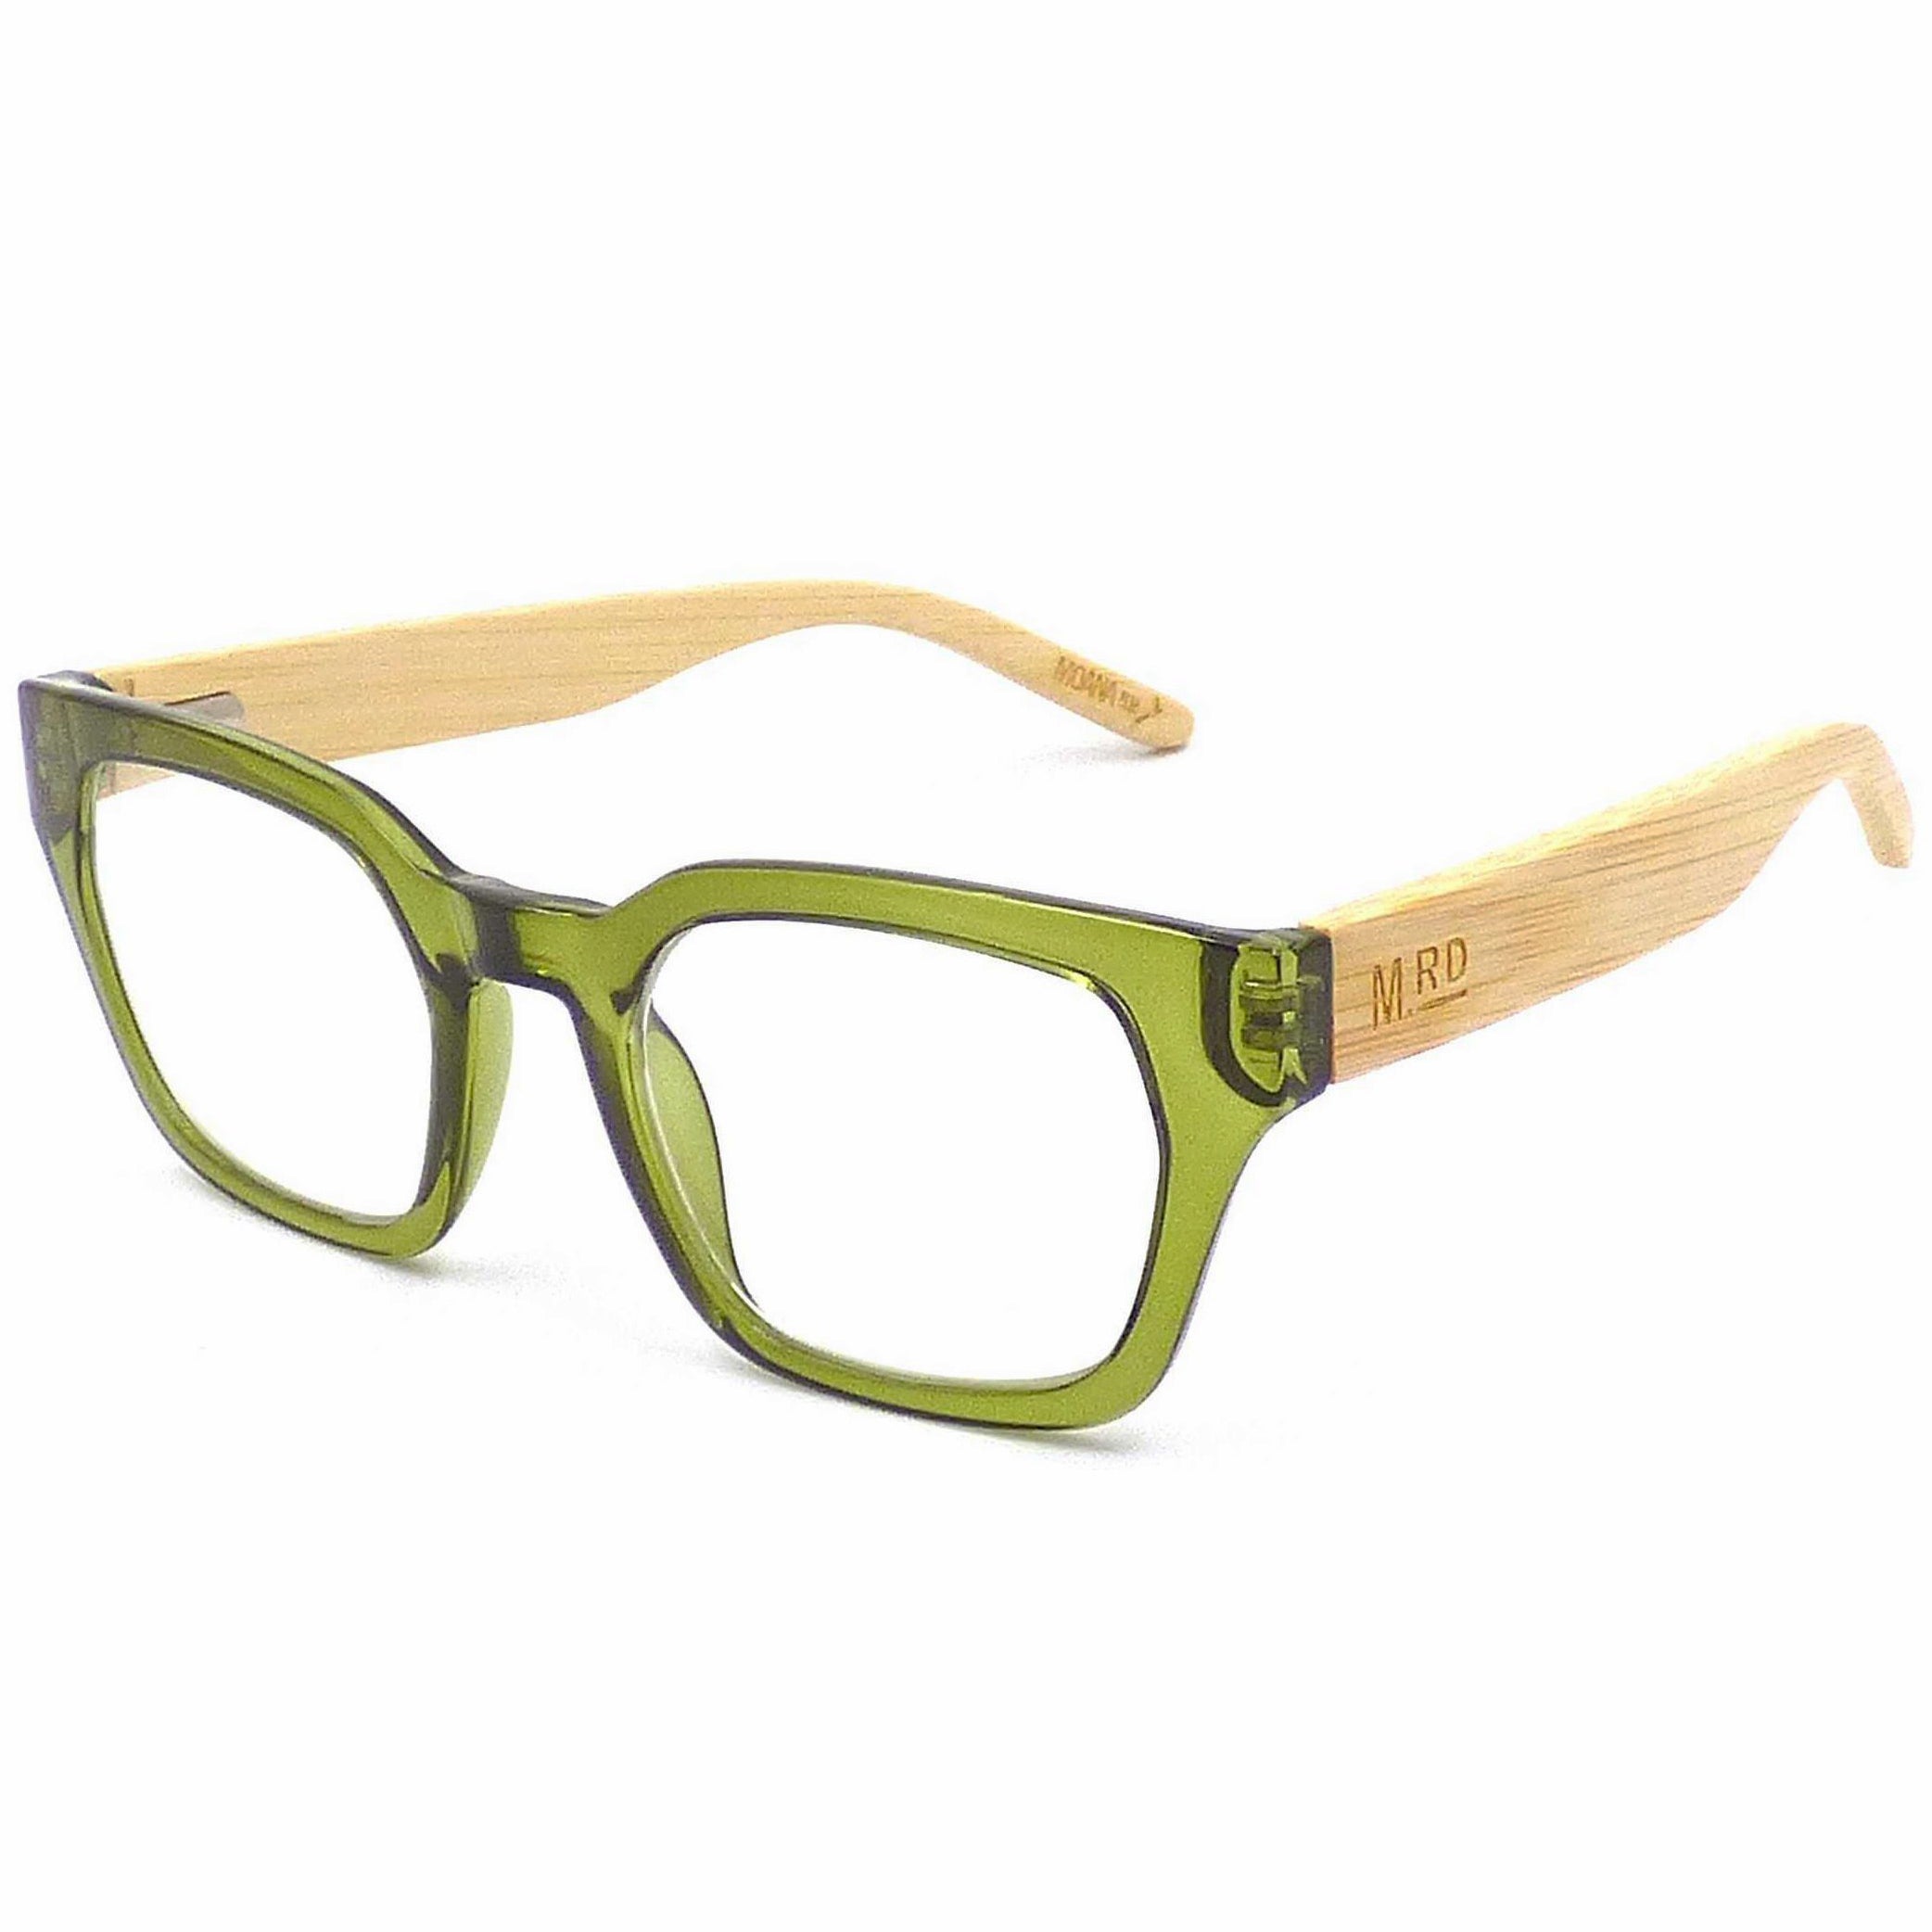 Moana Road Reading Glasses - Green +1.5